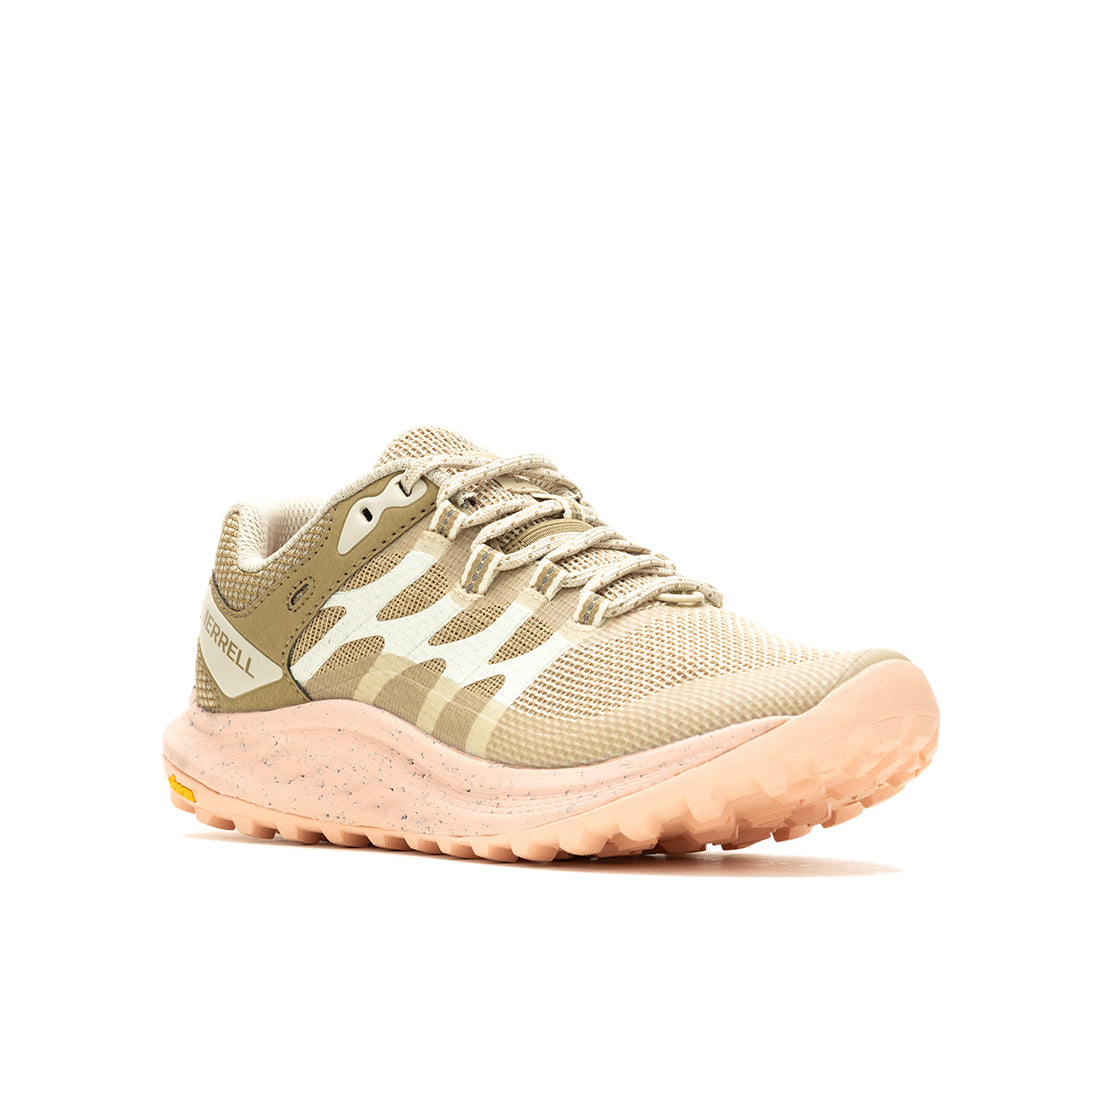 Antora 3 – Cream/Peach Womens Trail Running Shoes-2